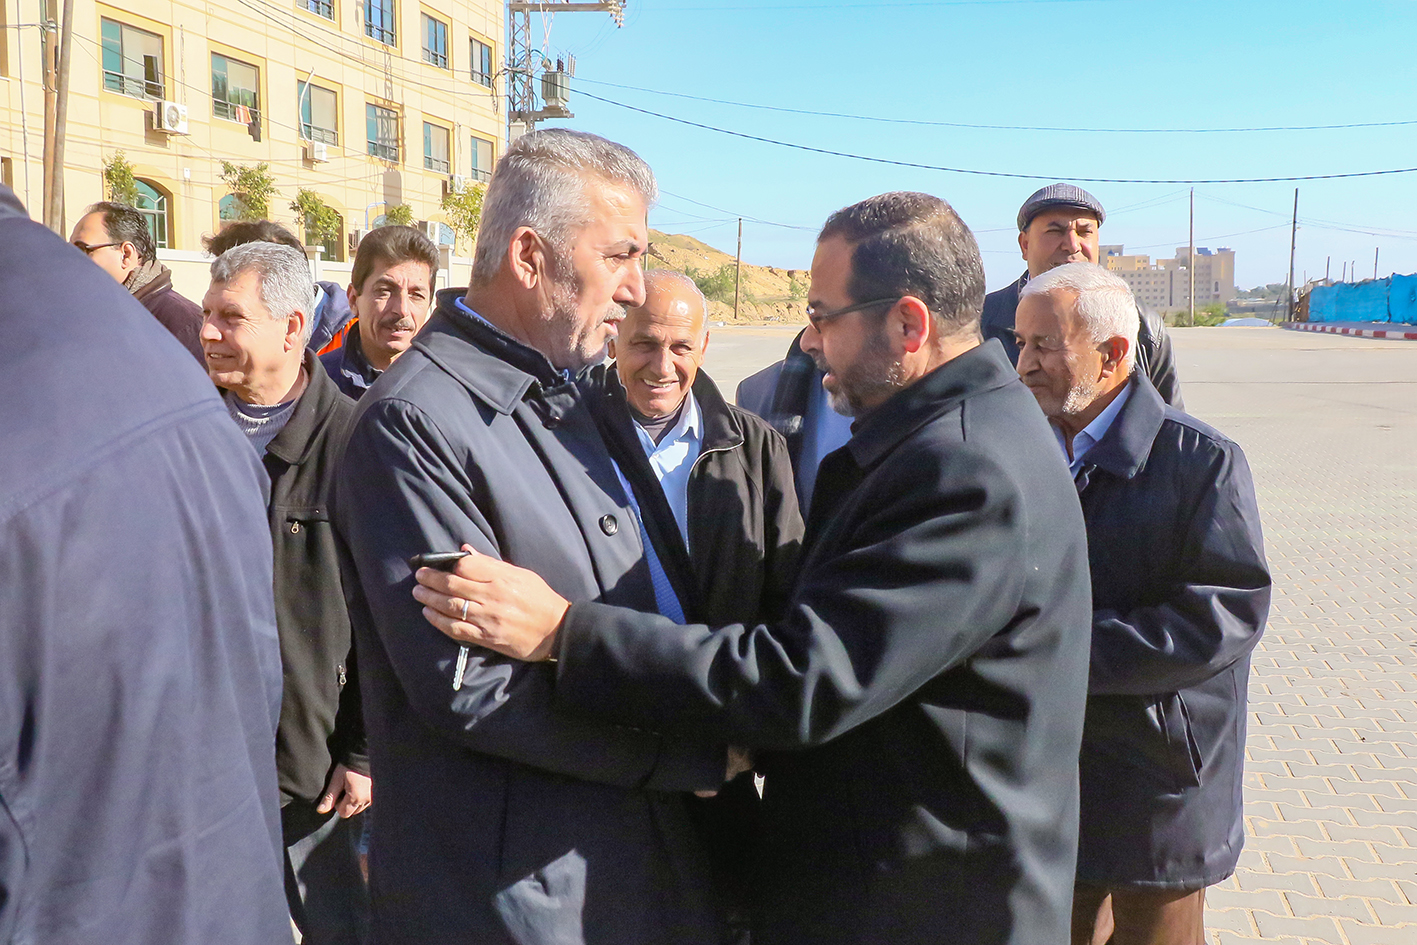 السيد رئيس البلدية يسقبل السيد وزير الحكم المحلي م.مجدي الصالح ومحافظ غزة أ.إبراهيم أبوالنجا